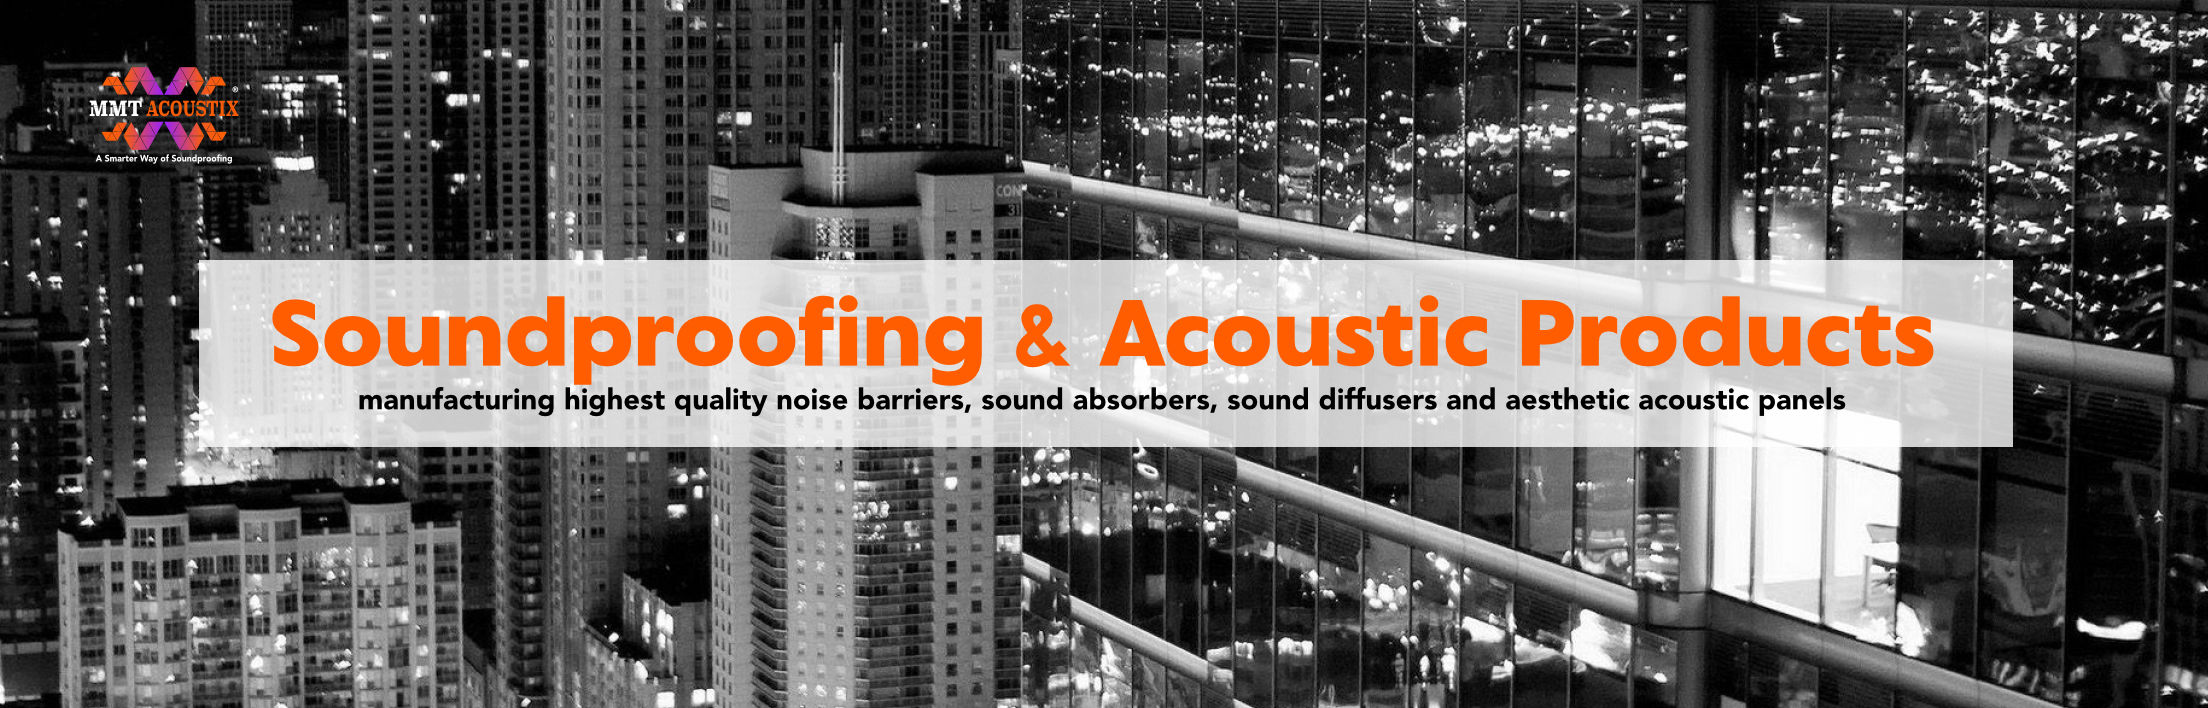 acoustic-foam-soundproofing-acoustic-panels